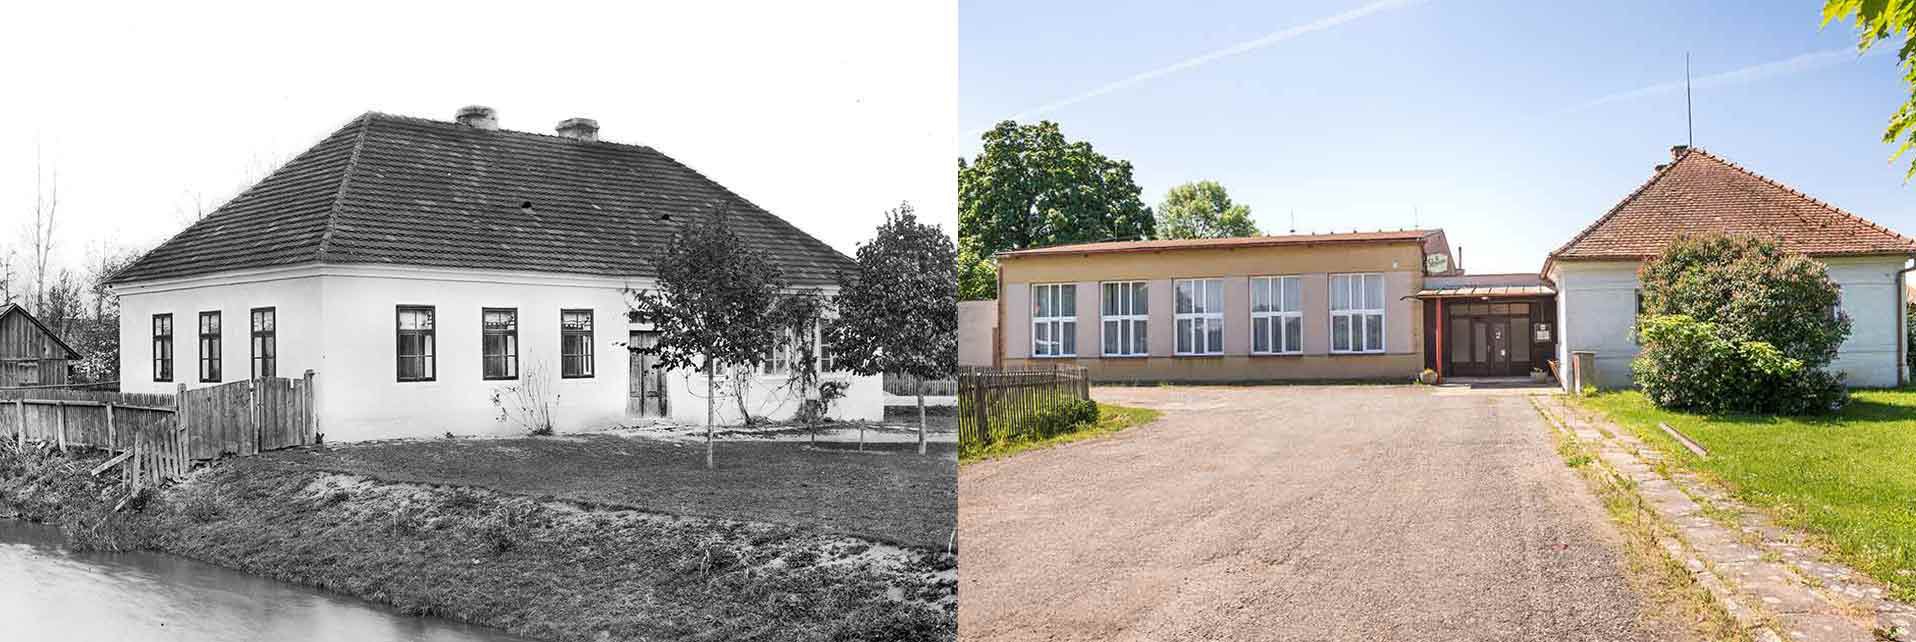 Komárov, obecná škola, 1. polovina 20. století